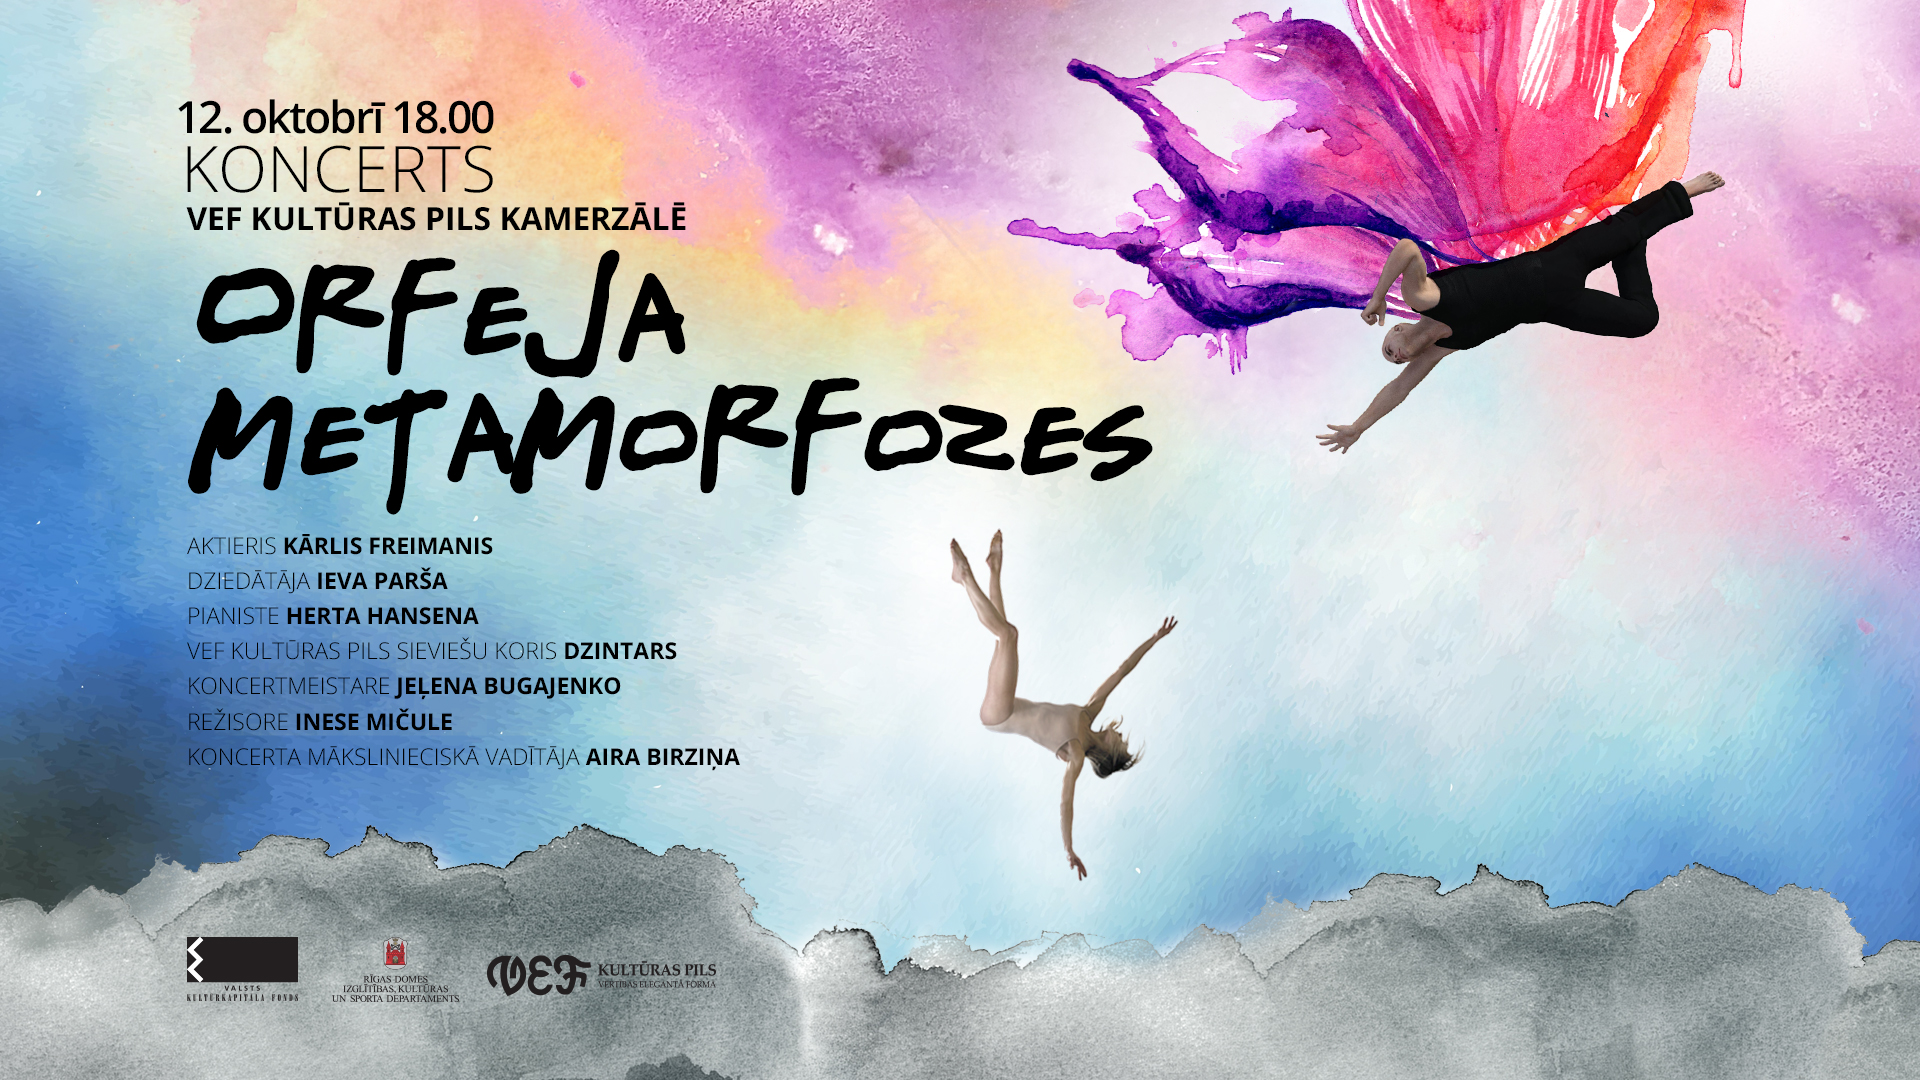 VEF Kultūras pils Kamerzālē skanēs koncertuzvedums “Orfeja metamorfozes”